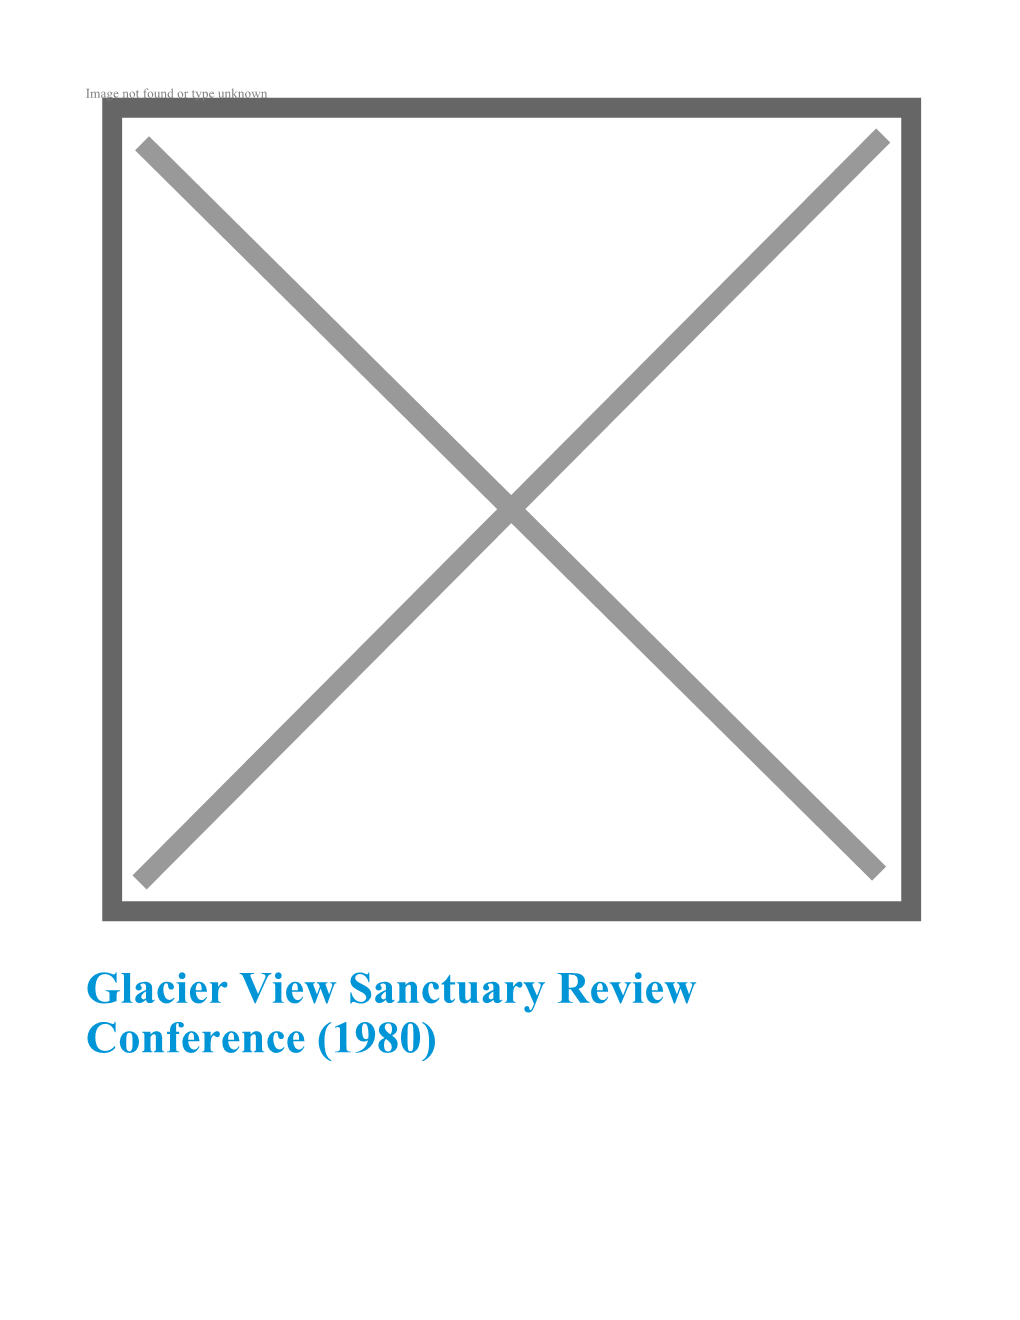 Glacier View Sanctuary Review Conference (1980) GILBERT M